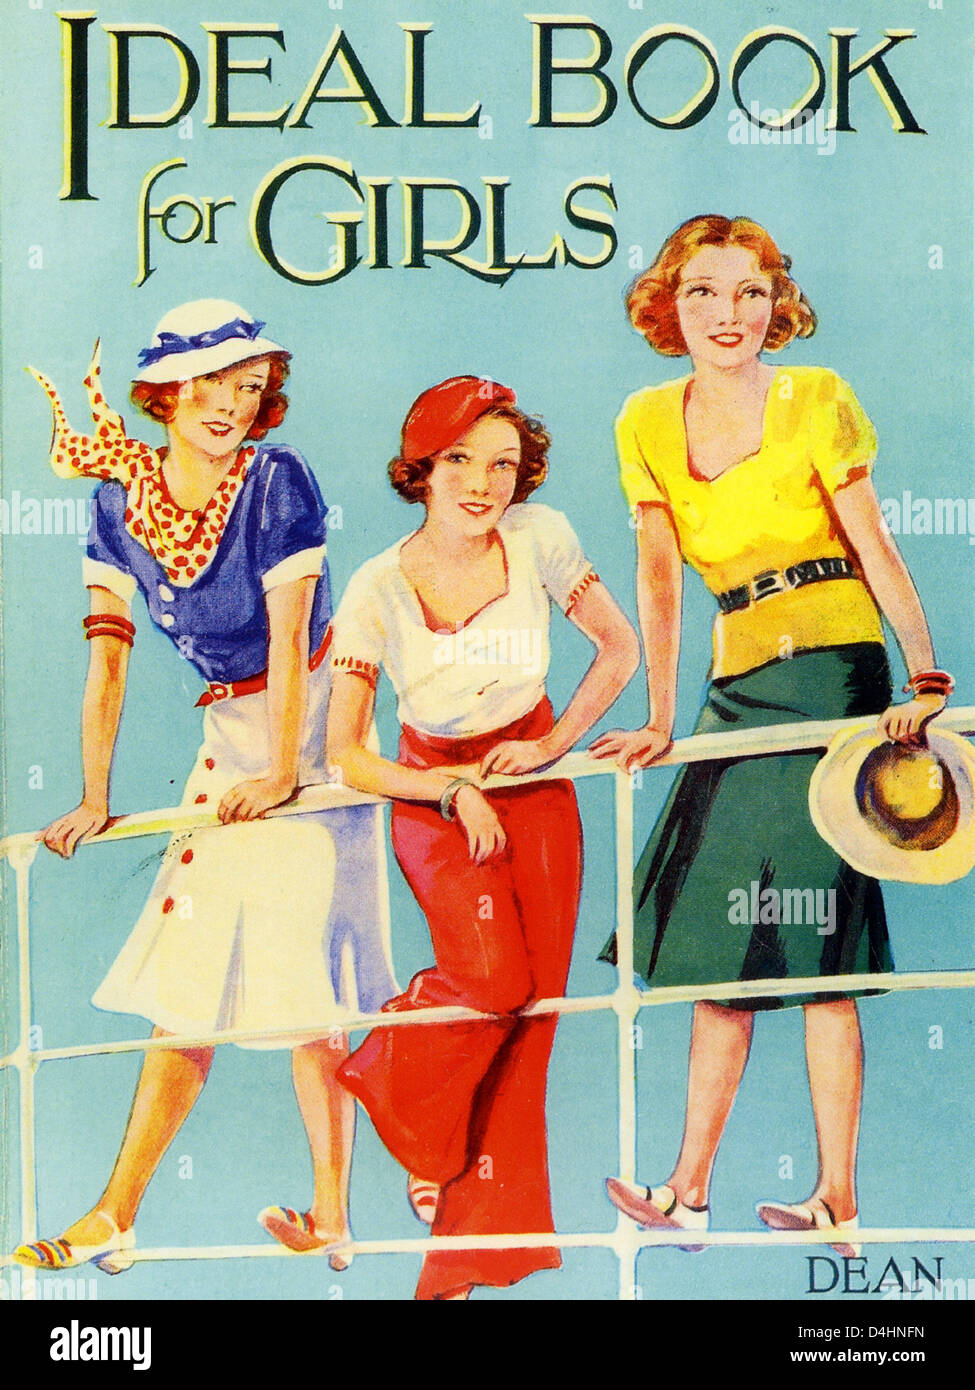 IDEALE Buch für Mädchen Cover des Buches von Dean & Son Ltd in London im Jahre 1936 veröffentlicht Stockfoto